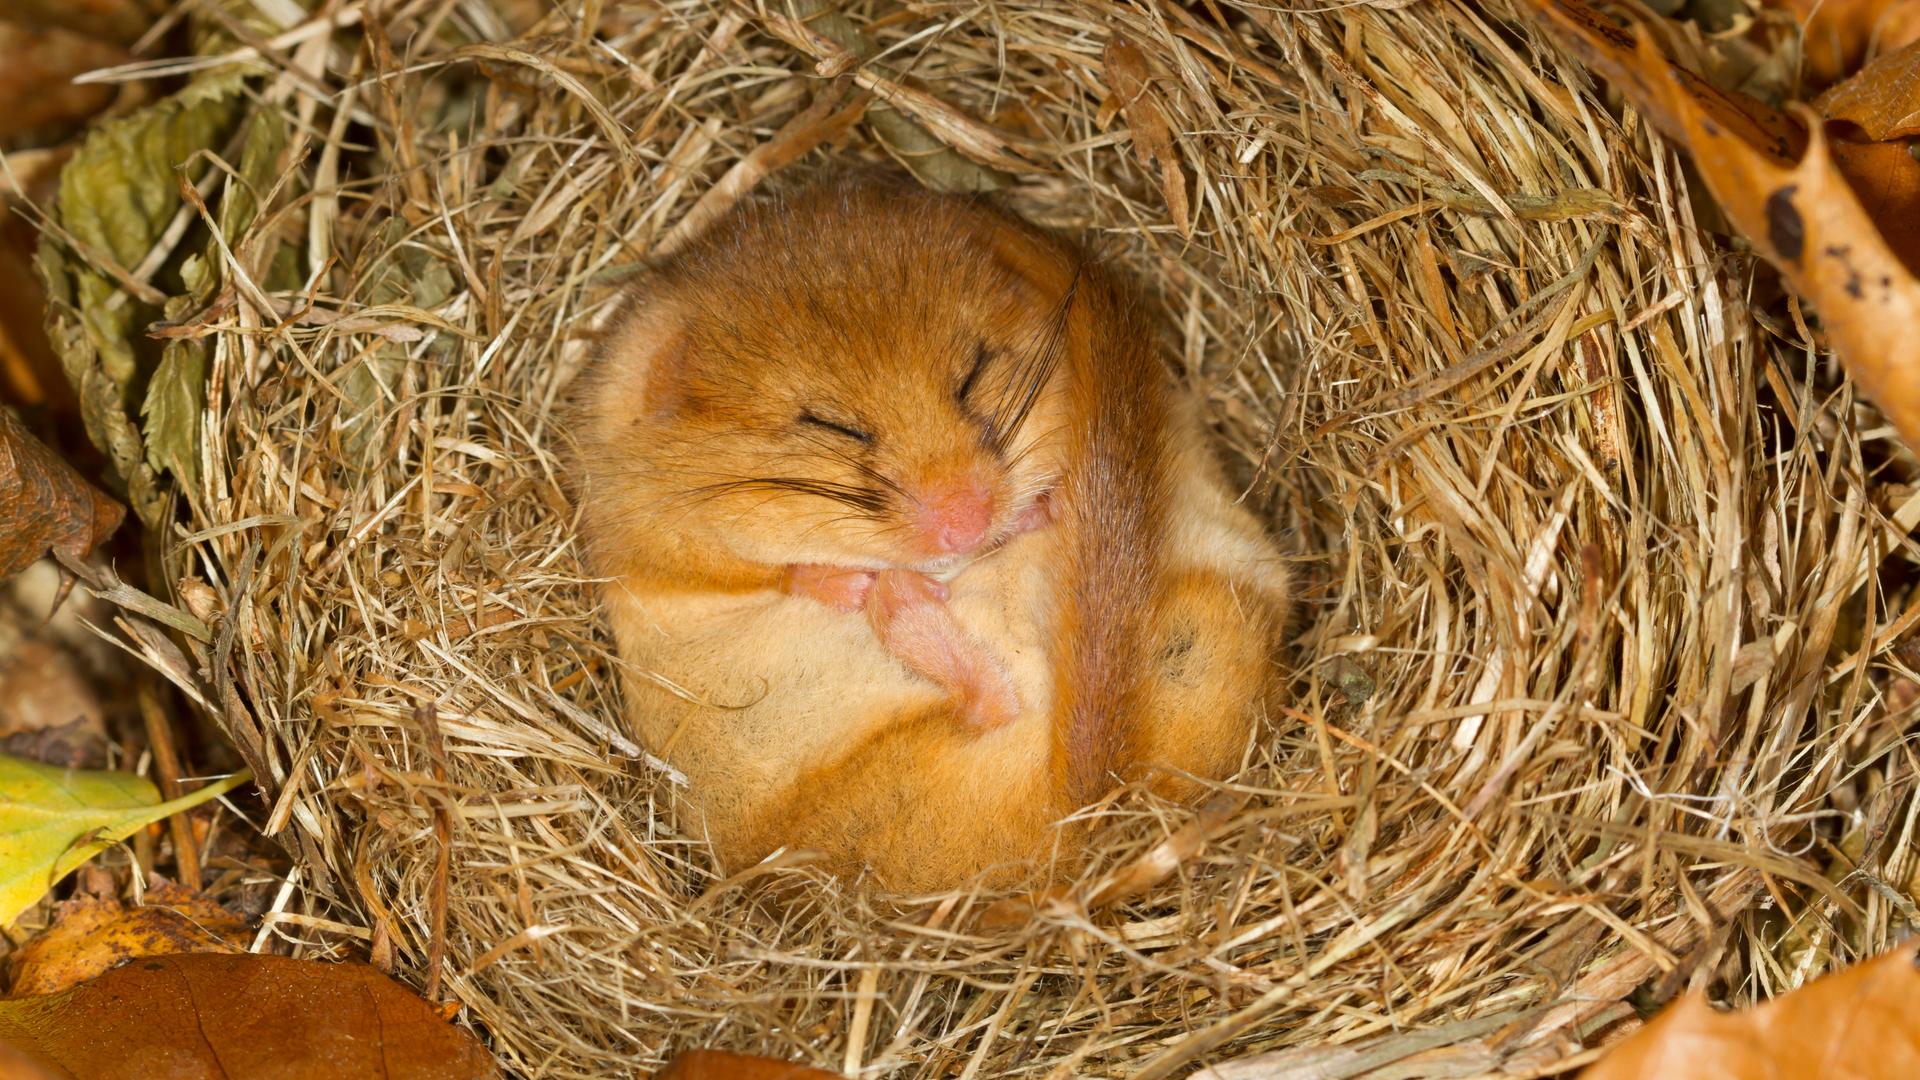 Ein kleiner hellbrauner Siebenschläfer liegt eingerollt mit dem Bauch nach oben und geschlossenen Augen in einem Nest.